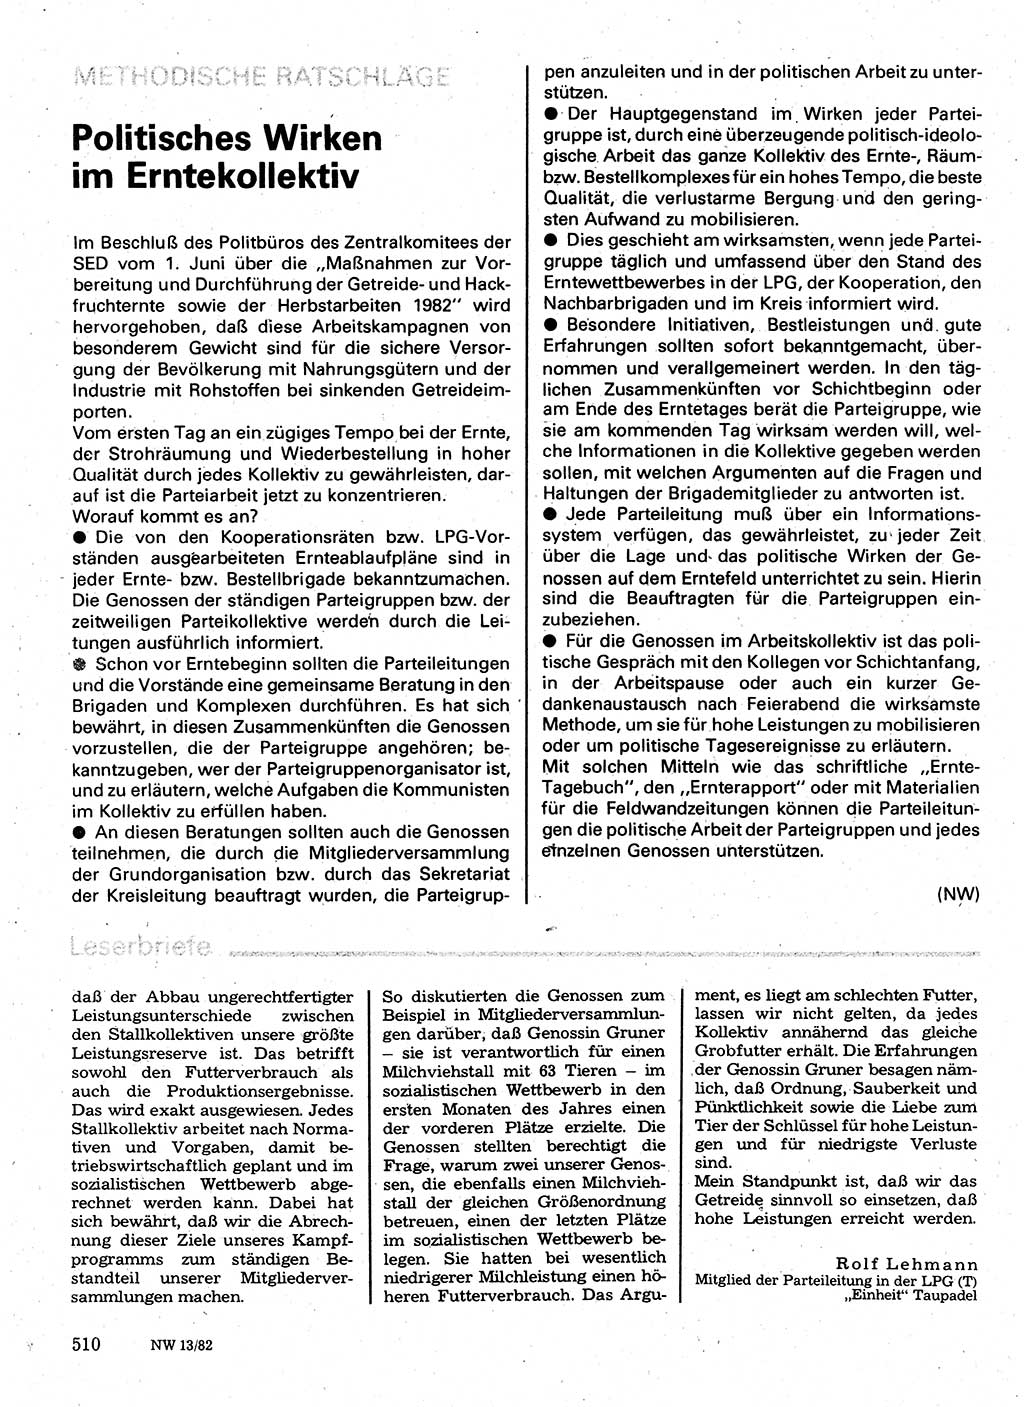 Neuer Weg (NW), Organ des Zentralkomitees (ZK) der SED (Sozialistische Einheitspartei Deutschlands) für Fragen des Parteilebens, 37. Jahrgang [Deutsche Demokratische Republik (DDR)] 1982, Seite 510 (NW ZK SED DDR 1982, S. 510)